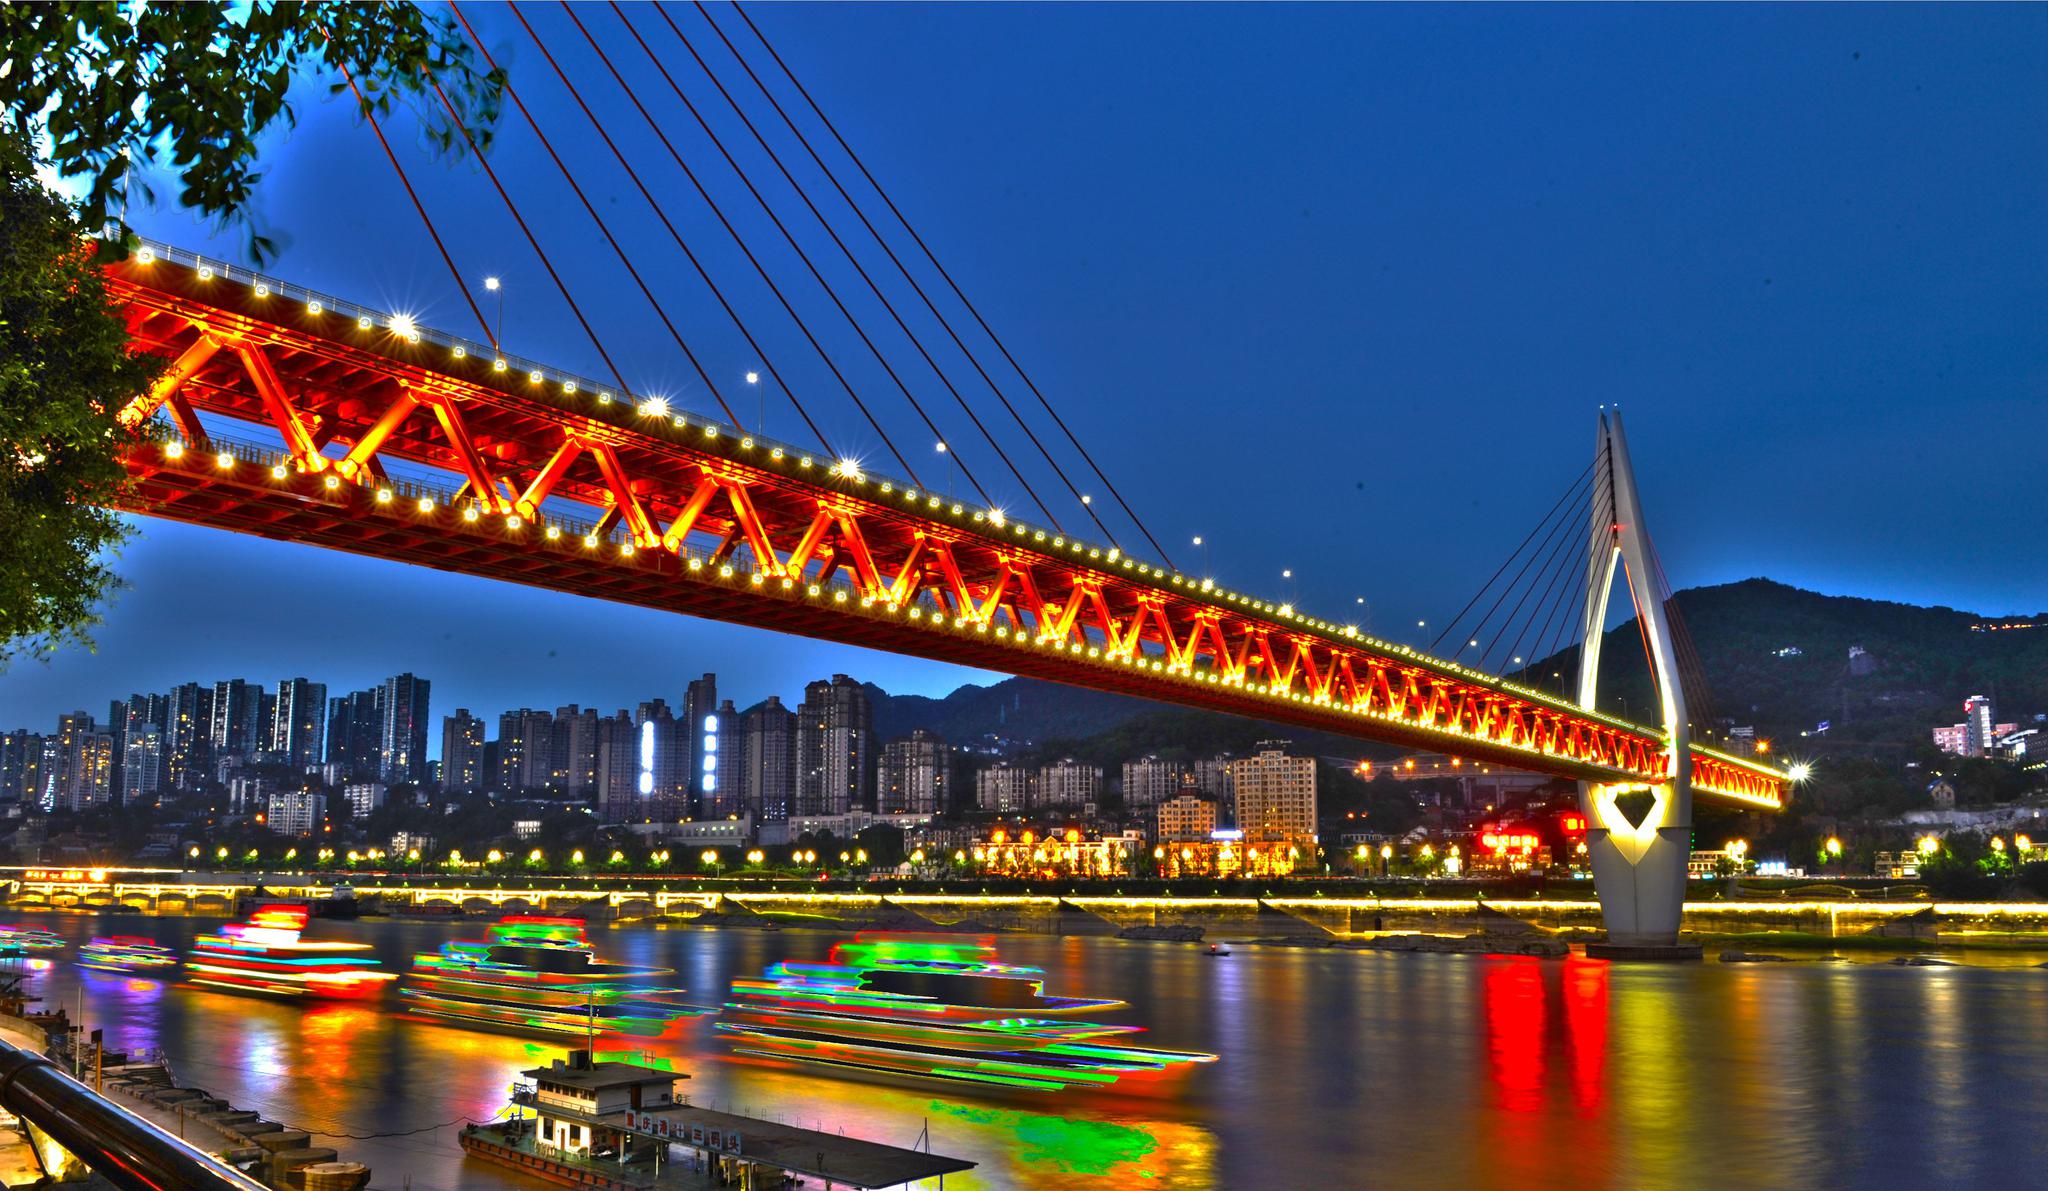 【携程攻略】重庆朝天门广场景点,朝天门码头是重庆的标志景点和必游之地，夜景尤为漂亮。但由于朝天门…